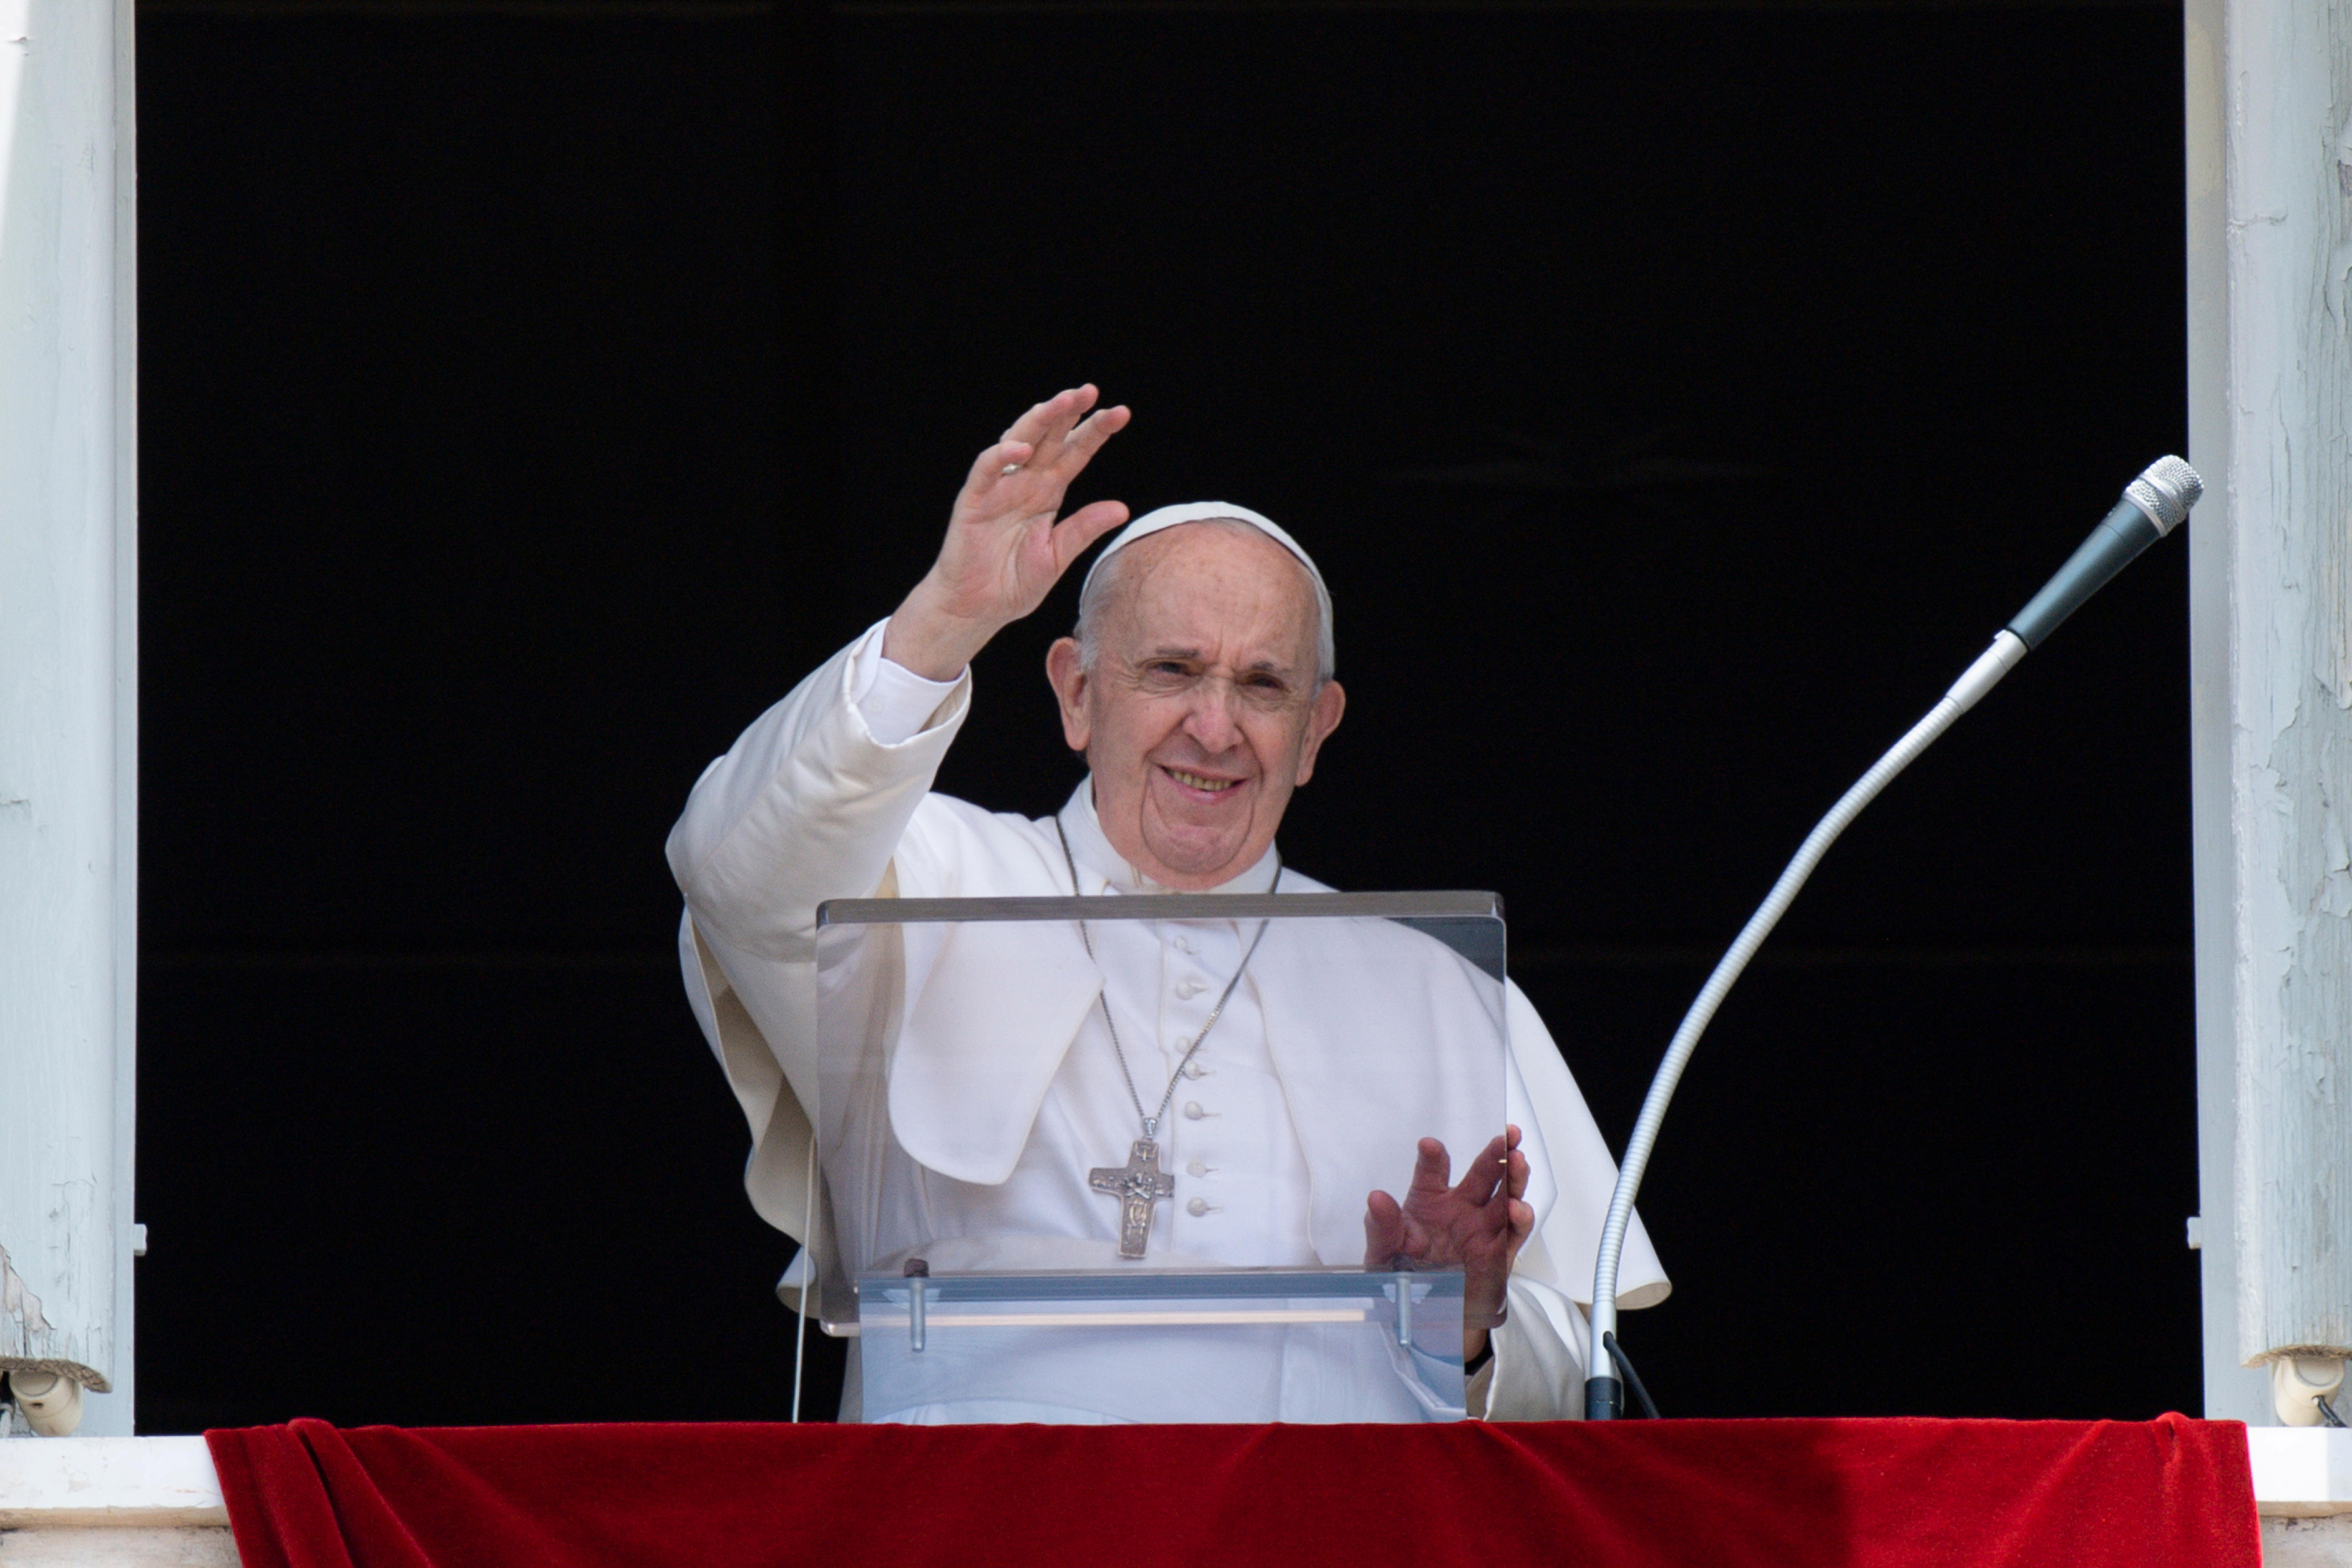 El alarmante mensaje del papa Francisco a los jóvenes: “Son quizás la última generación que puede salvarnos”